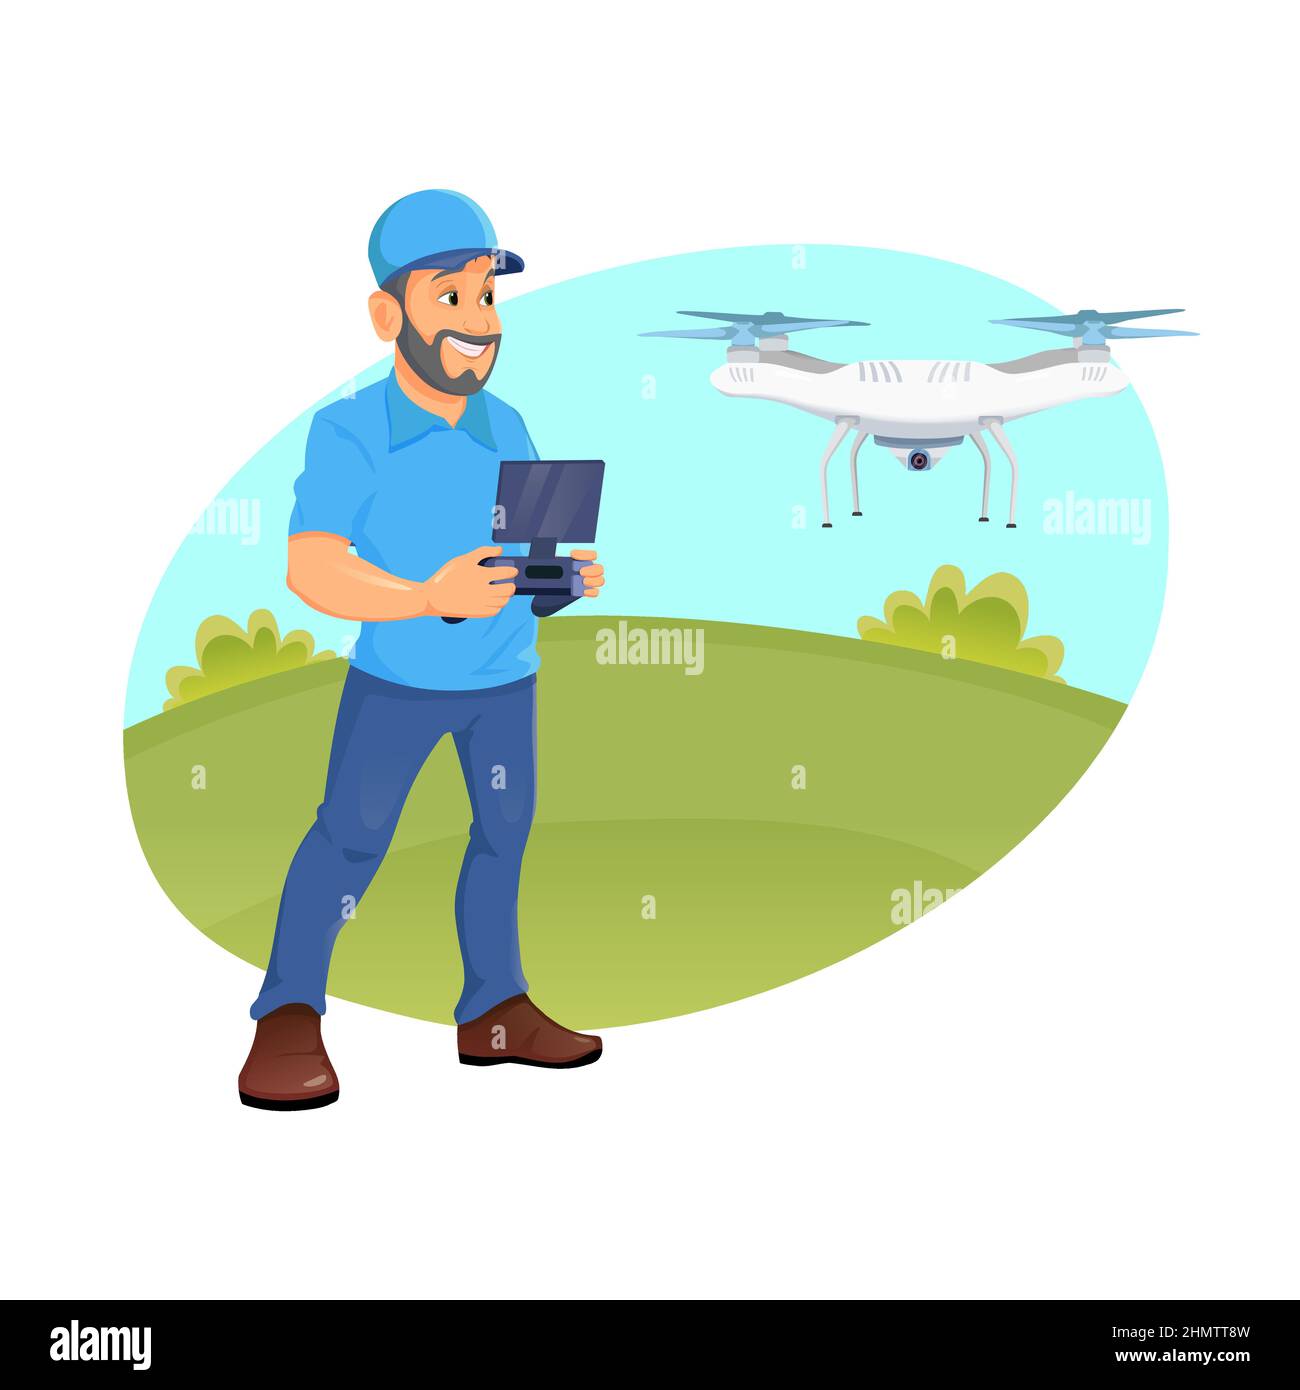 Ein junger Mann, der eine Drohne mit Fernbedienung fliegt. Kaukasischer Mann, der eine Drohne mit Fernbedienung betreibt. Der fröhliche Mann, der eine Drohne kontrolliert. Stock Vektor